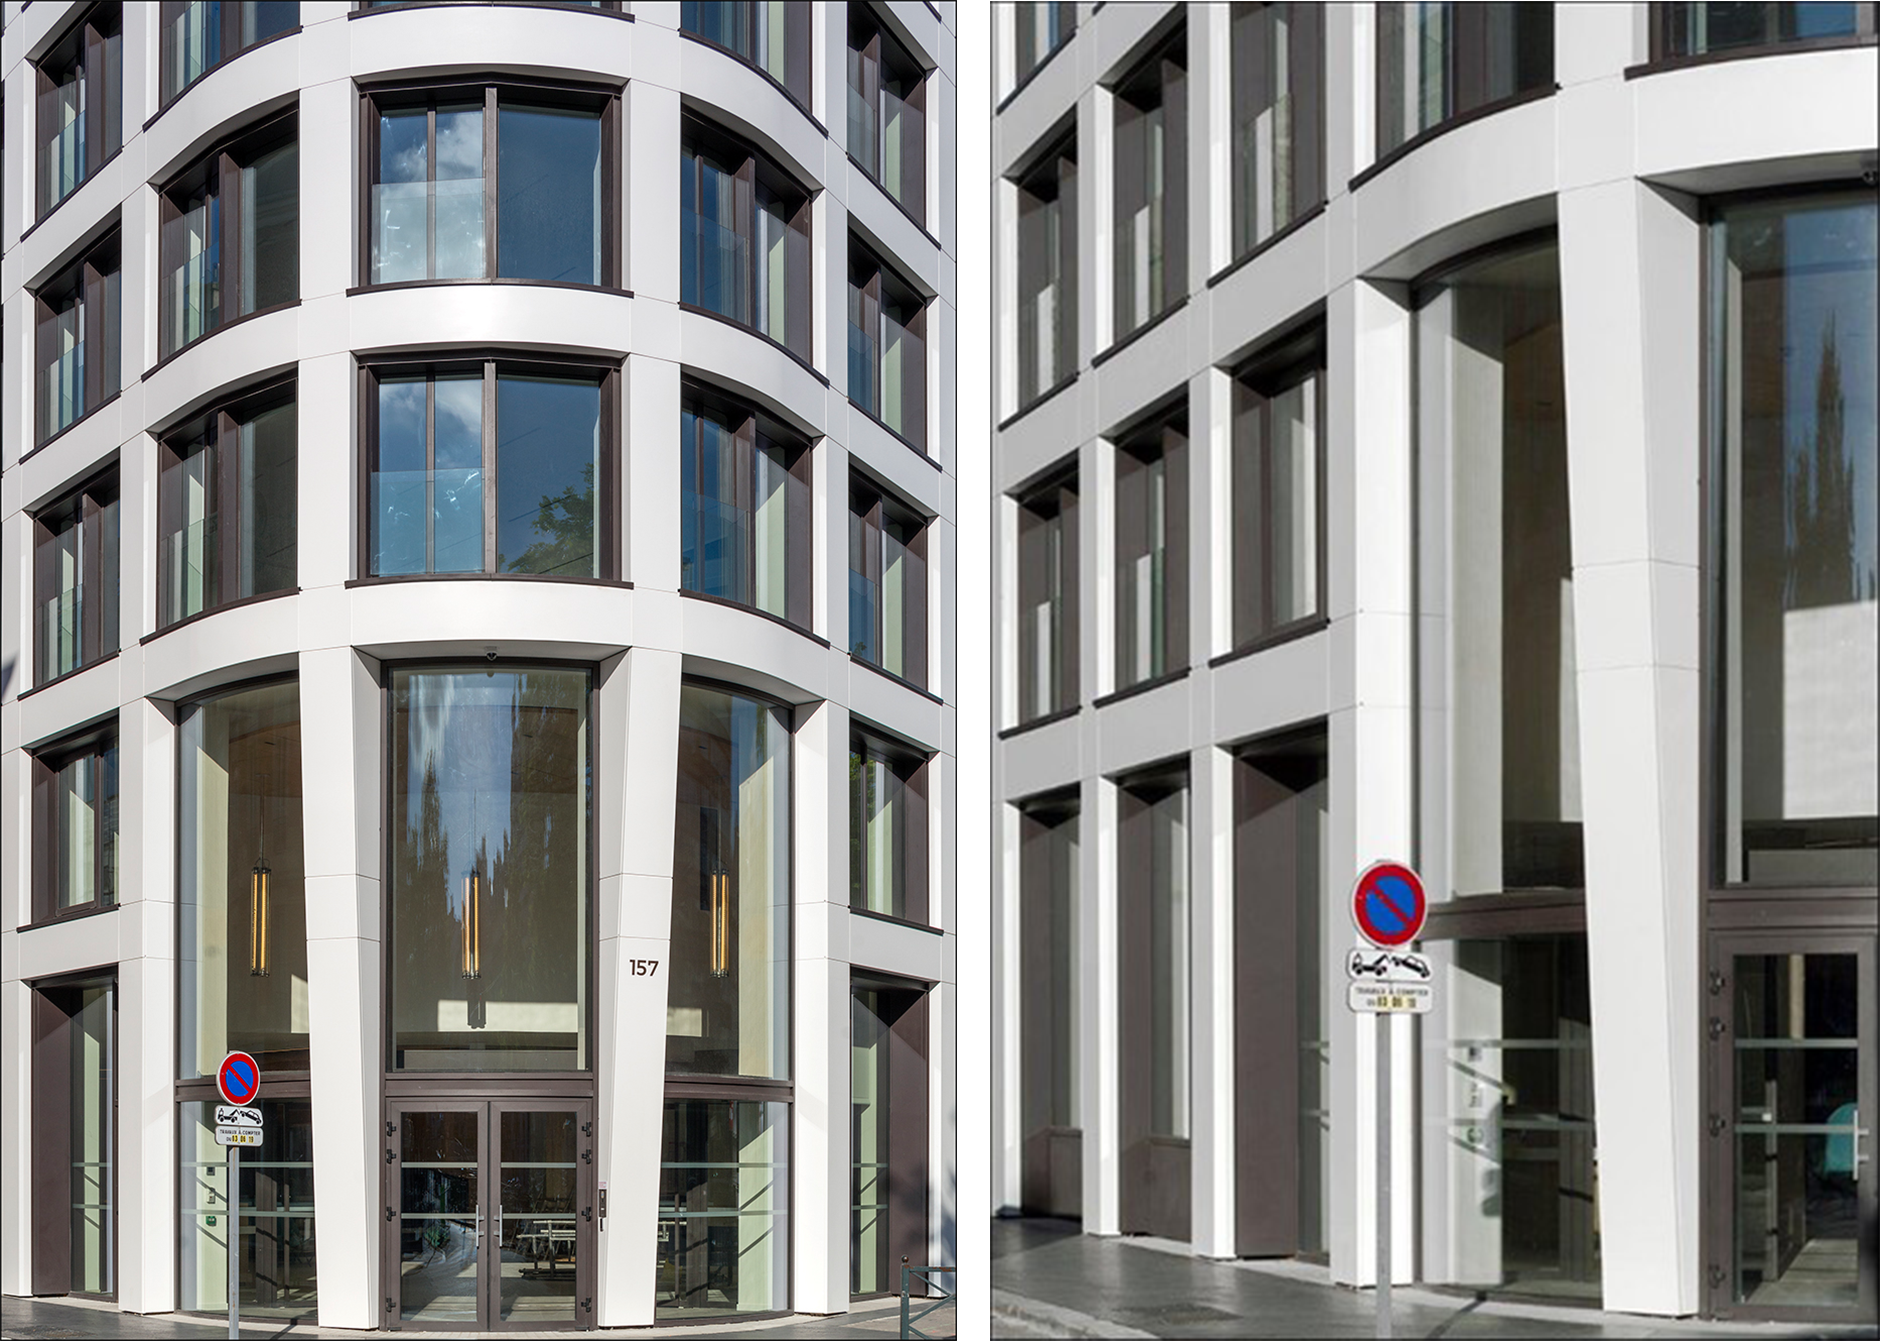 La façade de l’immeuble de bureau à Neuilly (France) a été recouverte de<br class='autobr' style='max-width: 672px; max-height: 10000px' />
800 panneaux en Corian® Solid Surface dans le coloris Glacier White